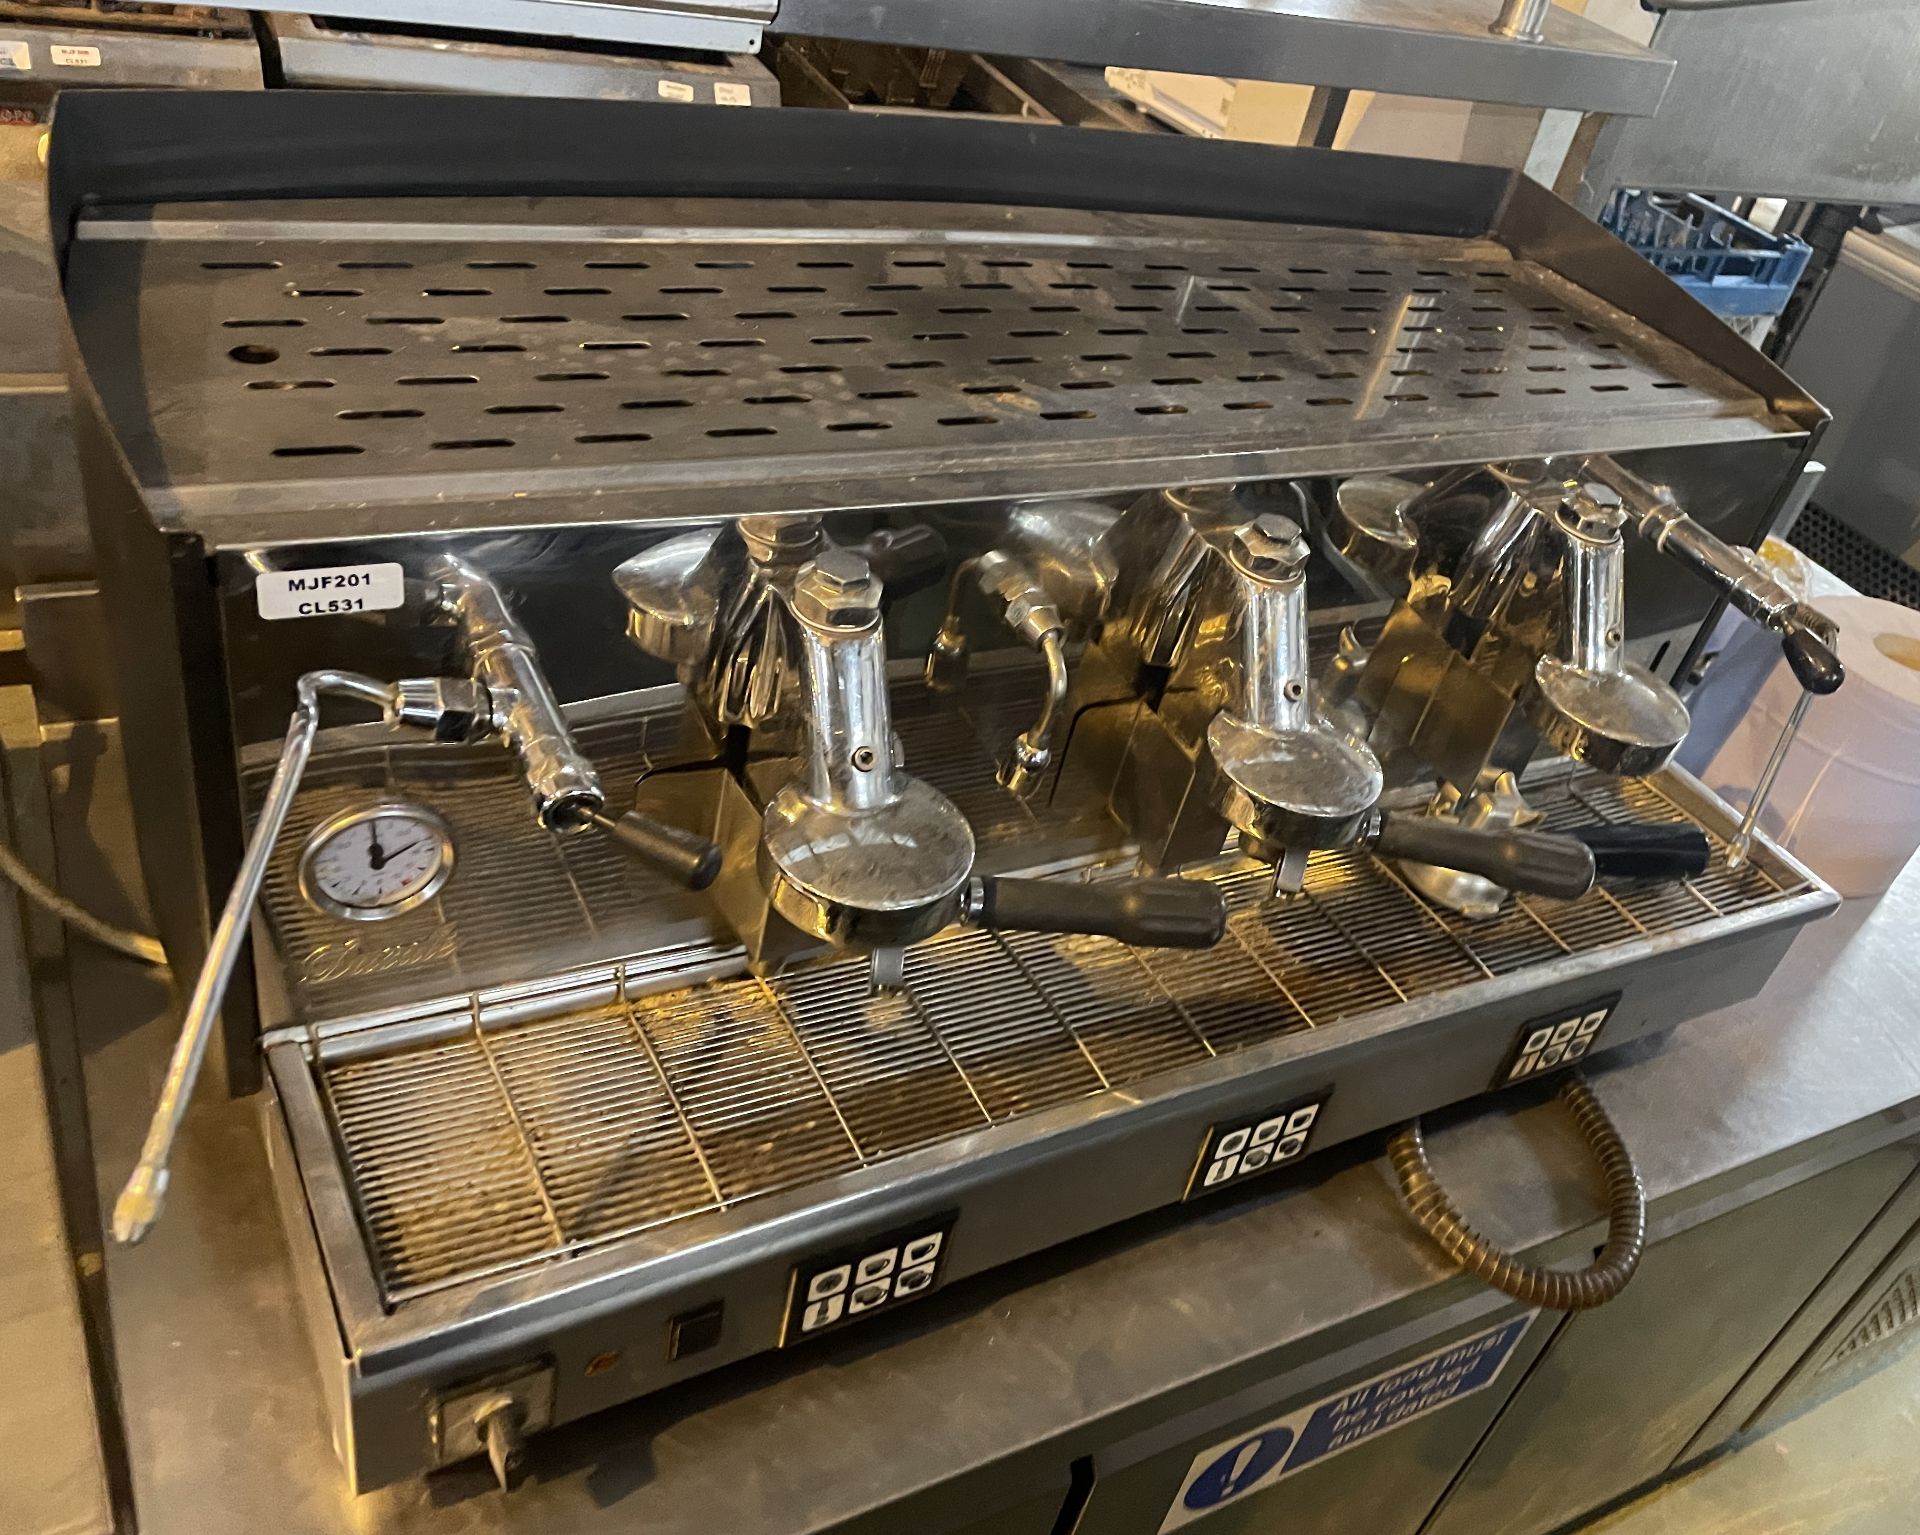 1 x Fiorenzato Ducale 3 Group Espresso Coffee Machine - Image 10 of 10